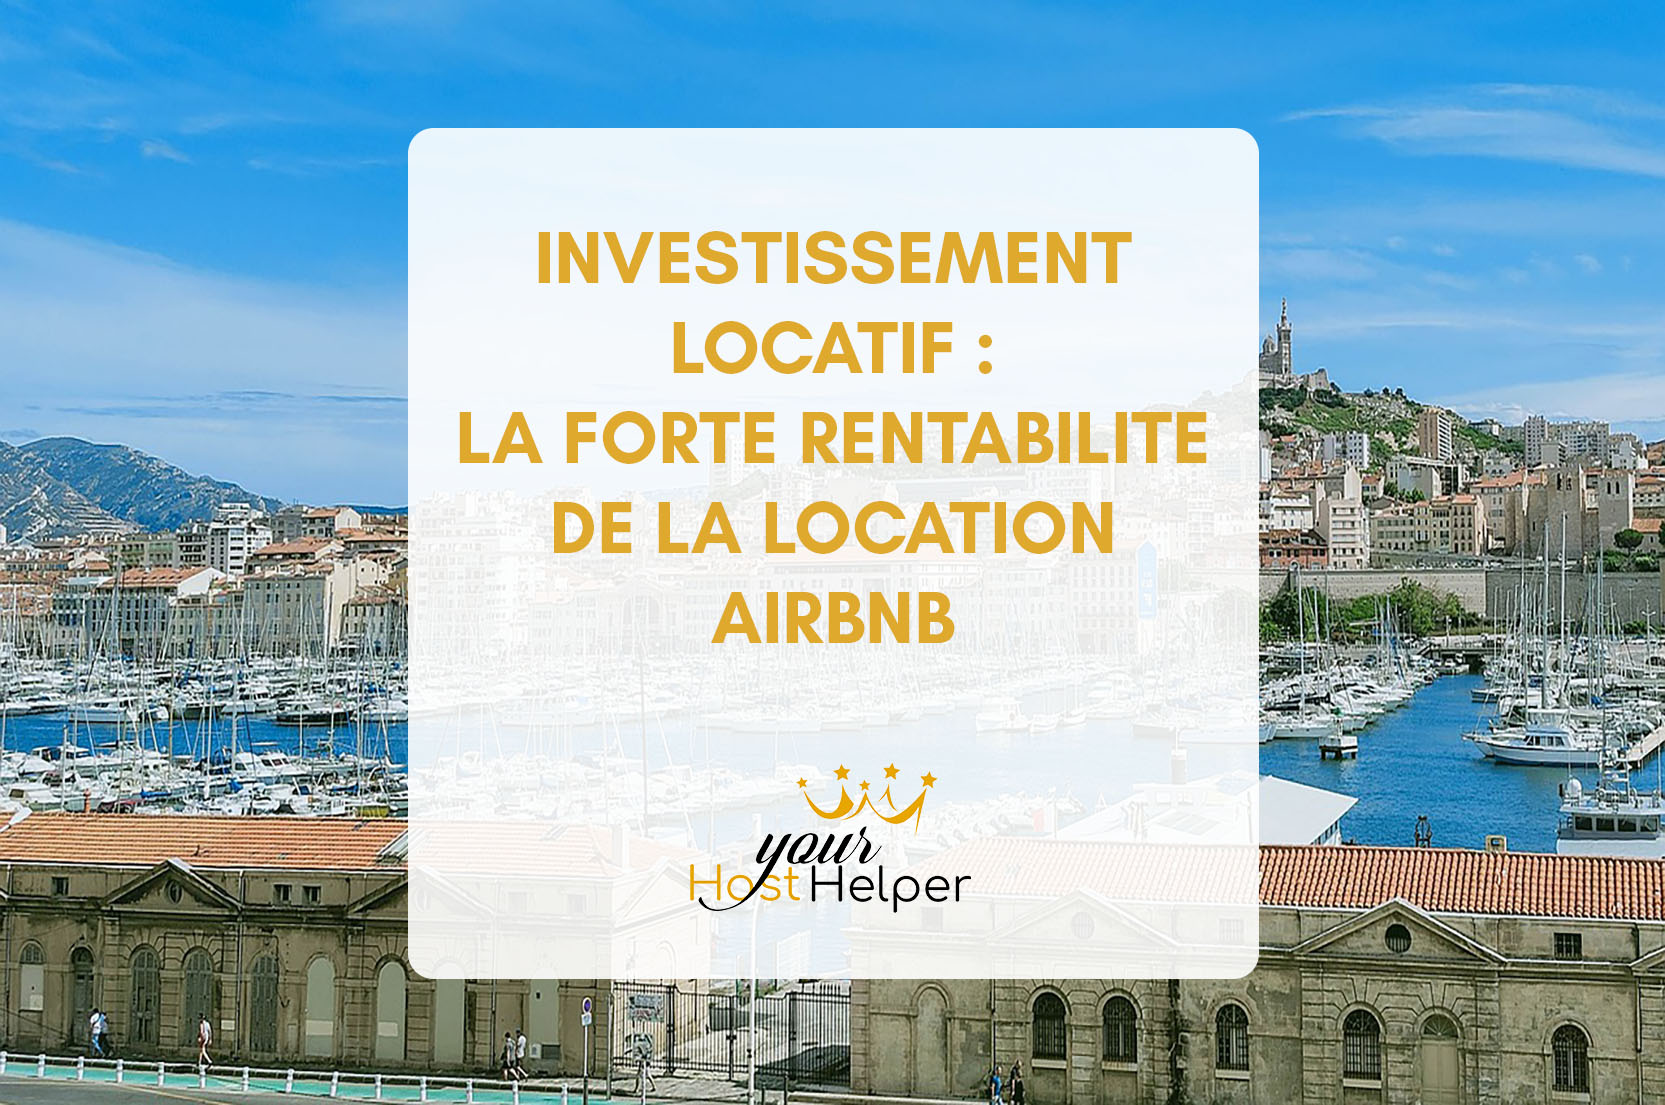 Вы просматриваете Инвестиции в аренду: высокая прибыльность аренды Airbnb в расшифровке вашим марсельским консьержем